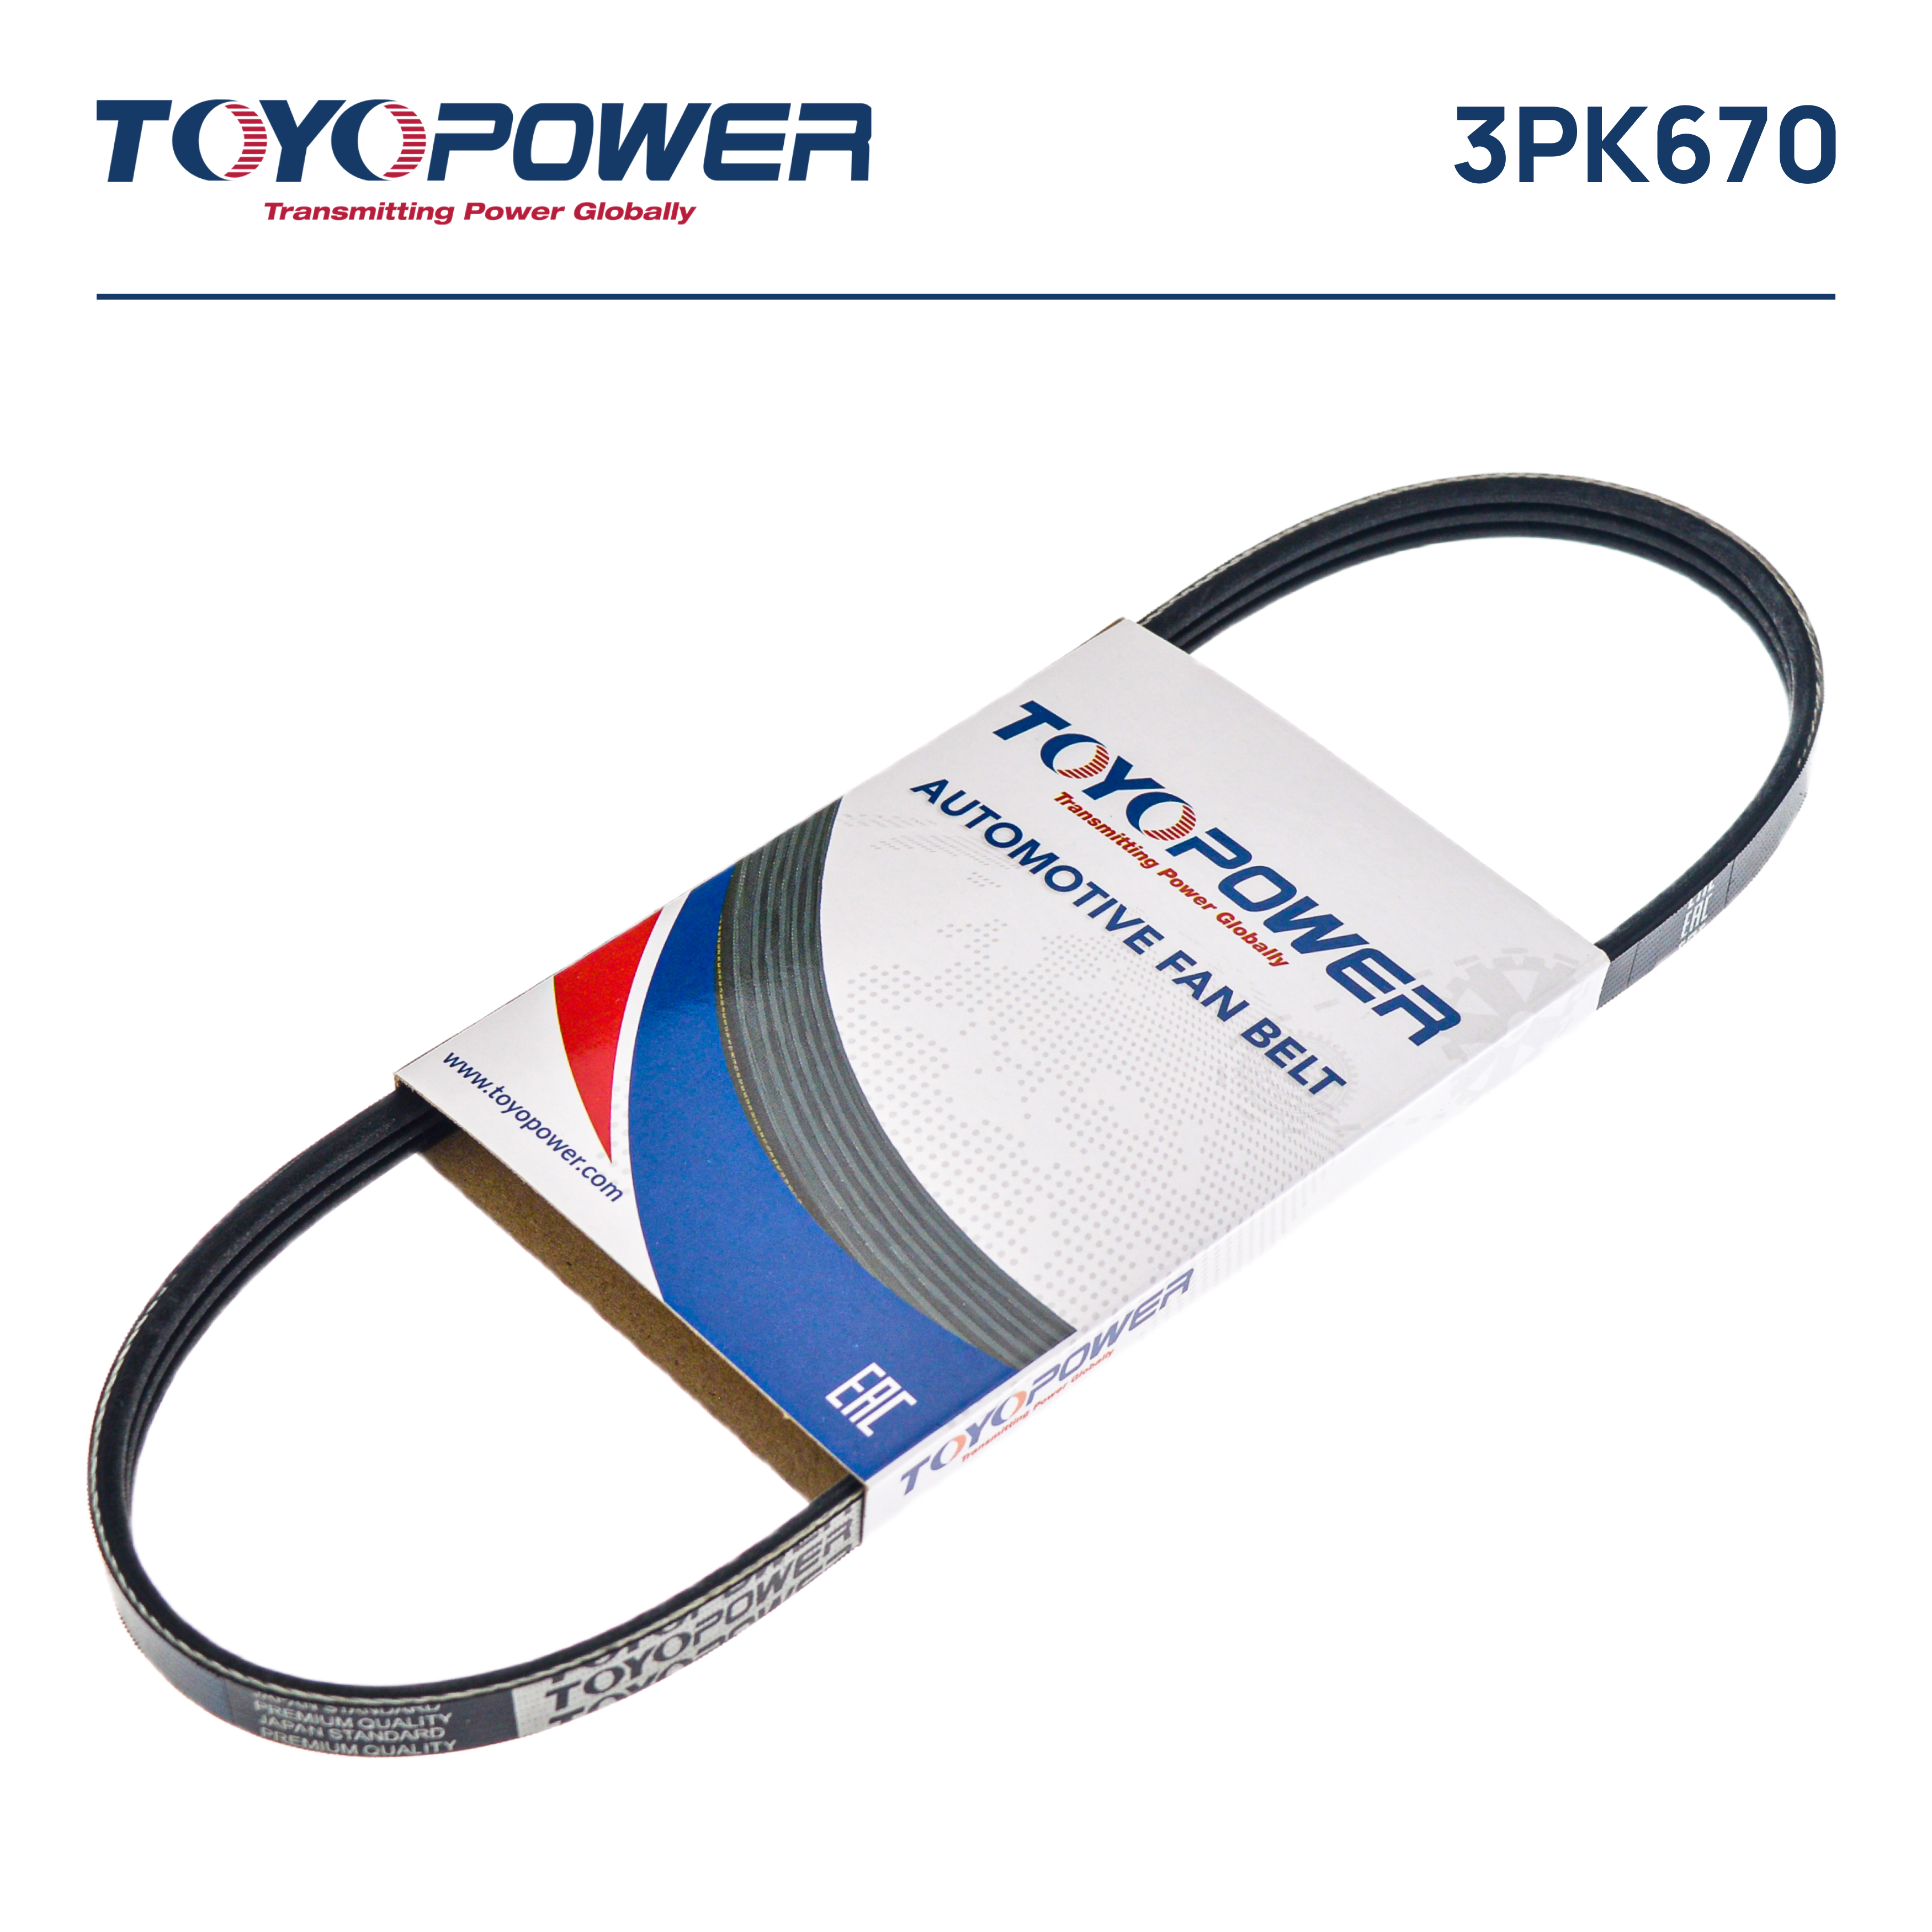 Ремень поликлиновый - Toyopower 3PK670